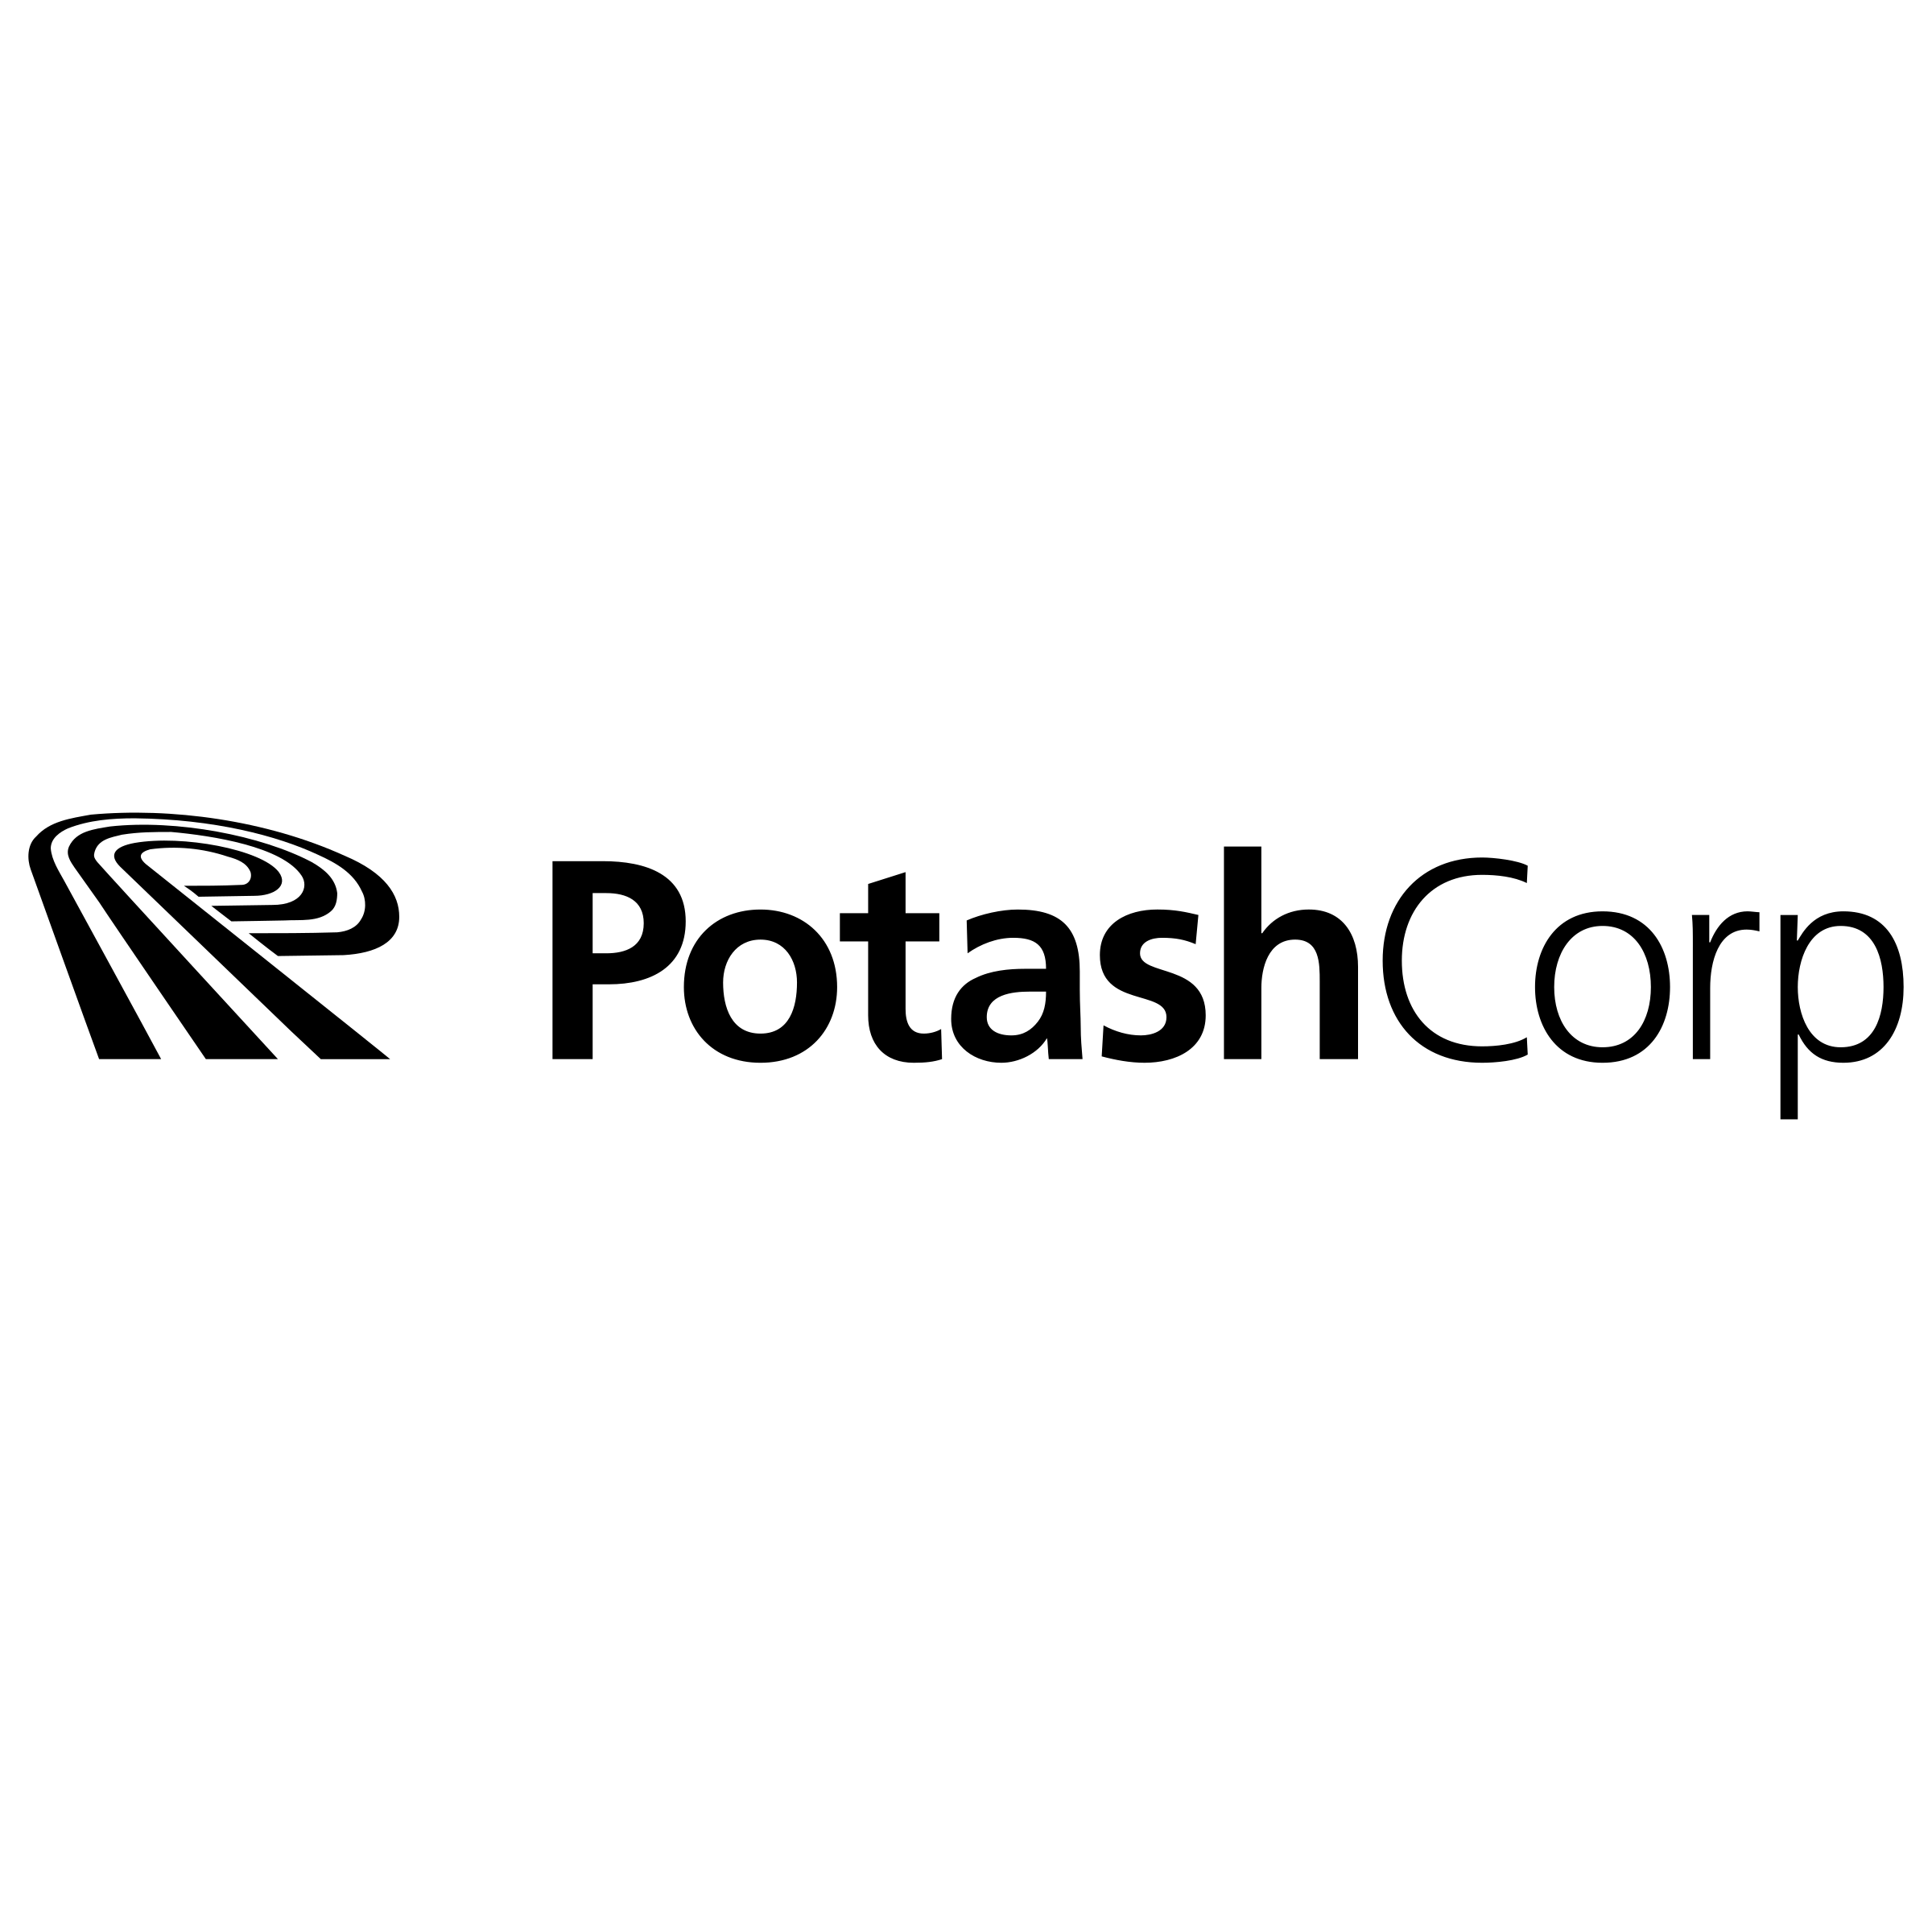 PotashCorp Logo - PotashCorp Logo PNG Transparent & SVG Vector